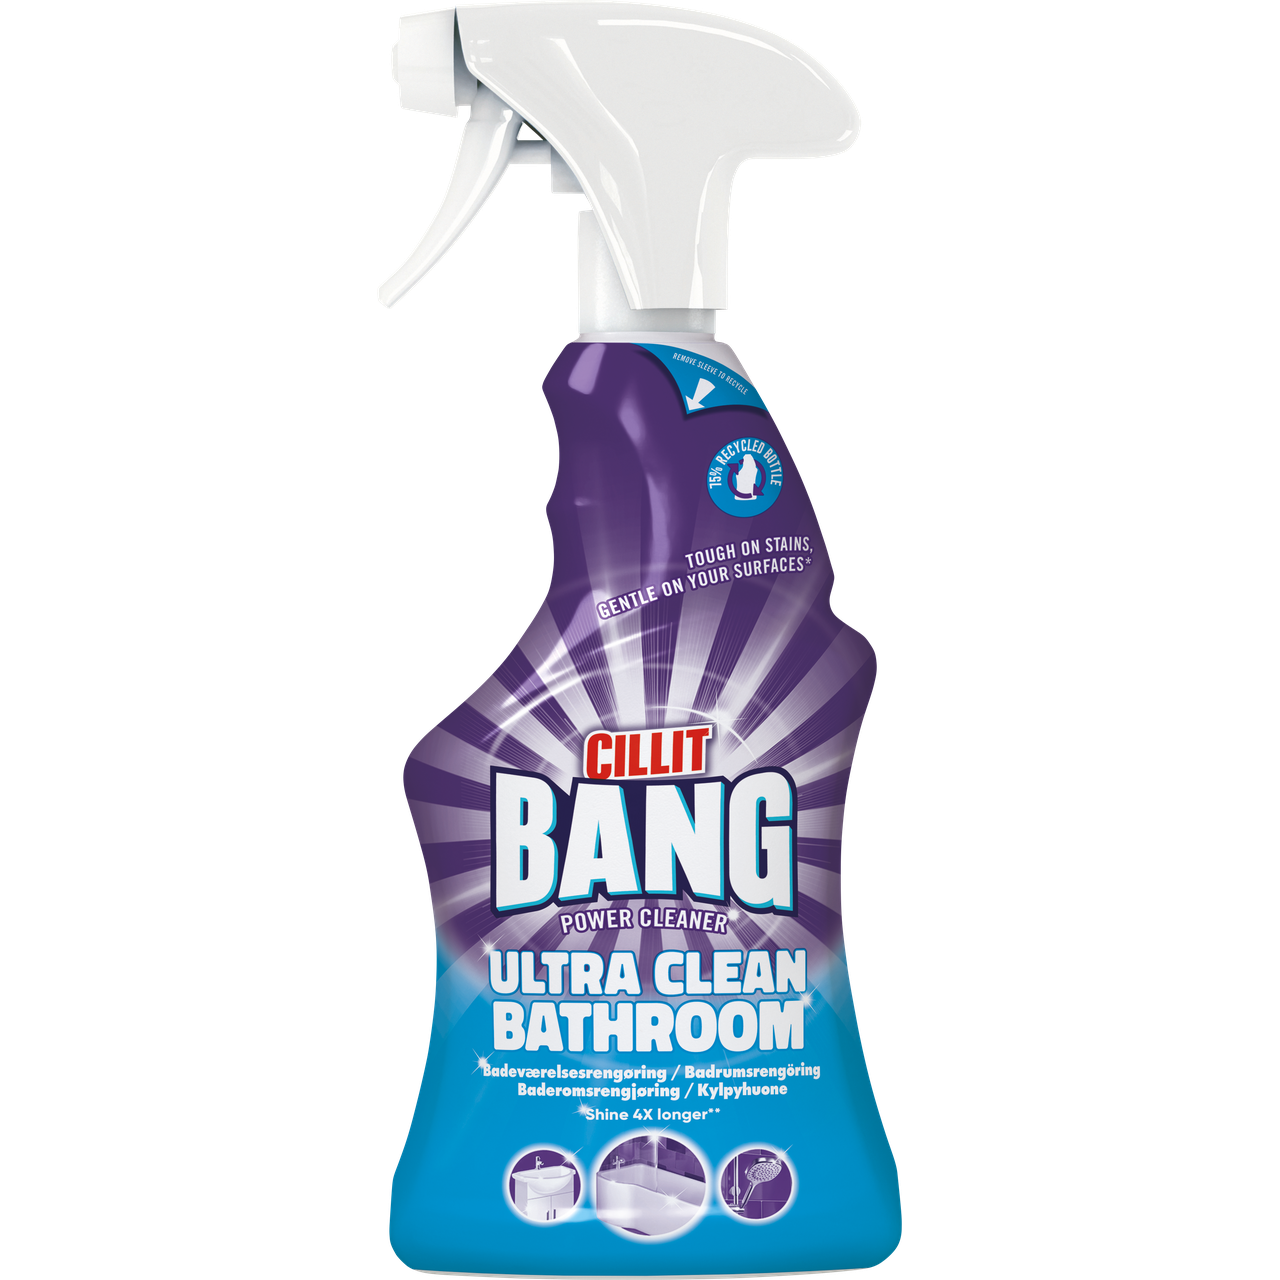 CILLIT BANG ULTRA CLEAN BATHROOM – BADRUMSRENGÖRING 